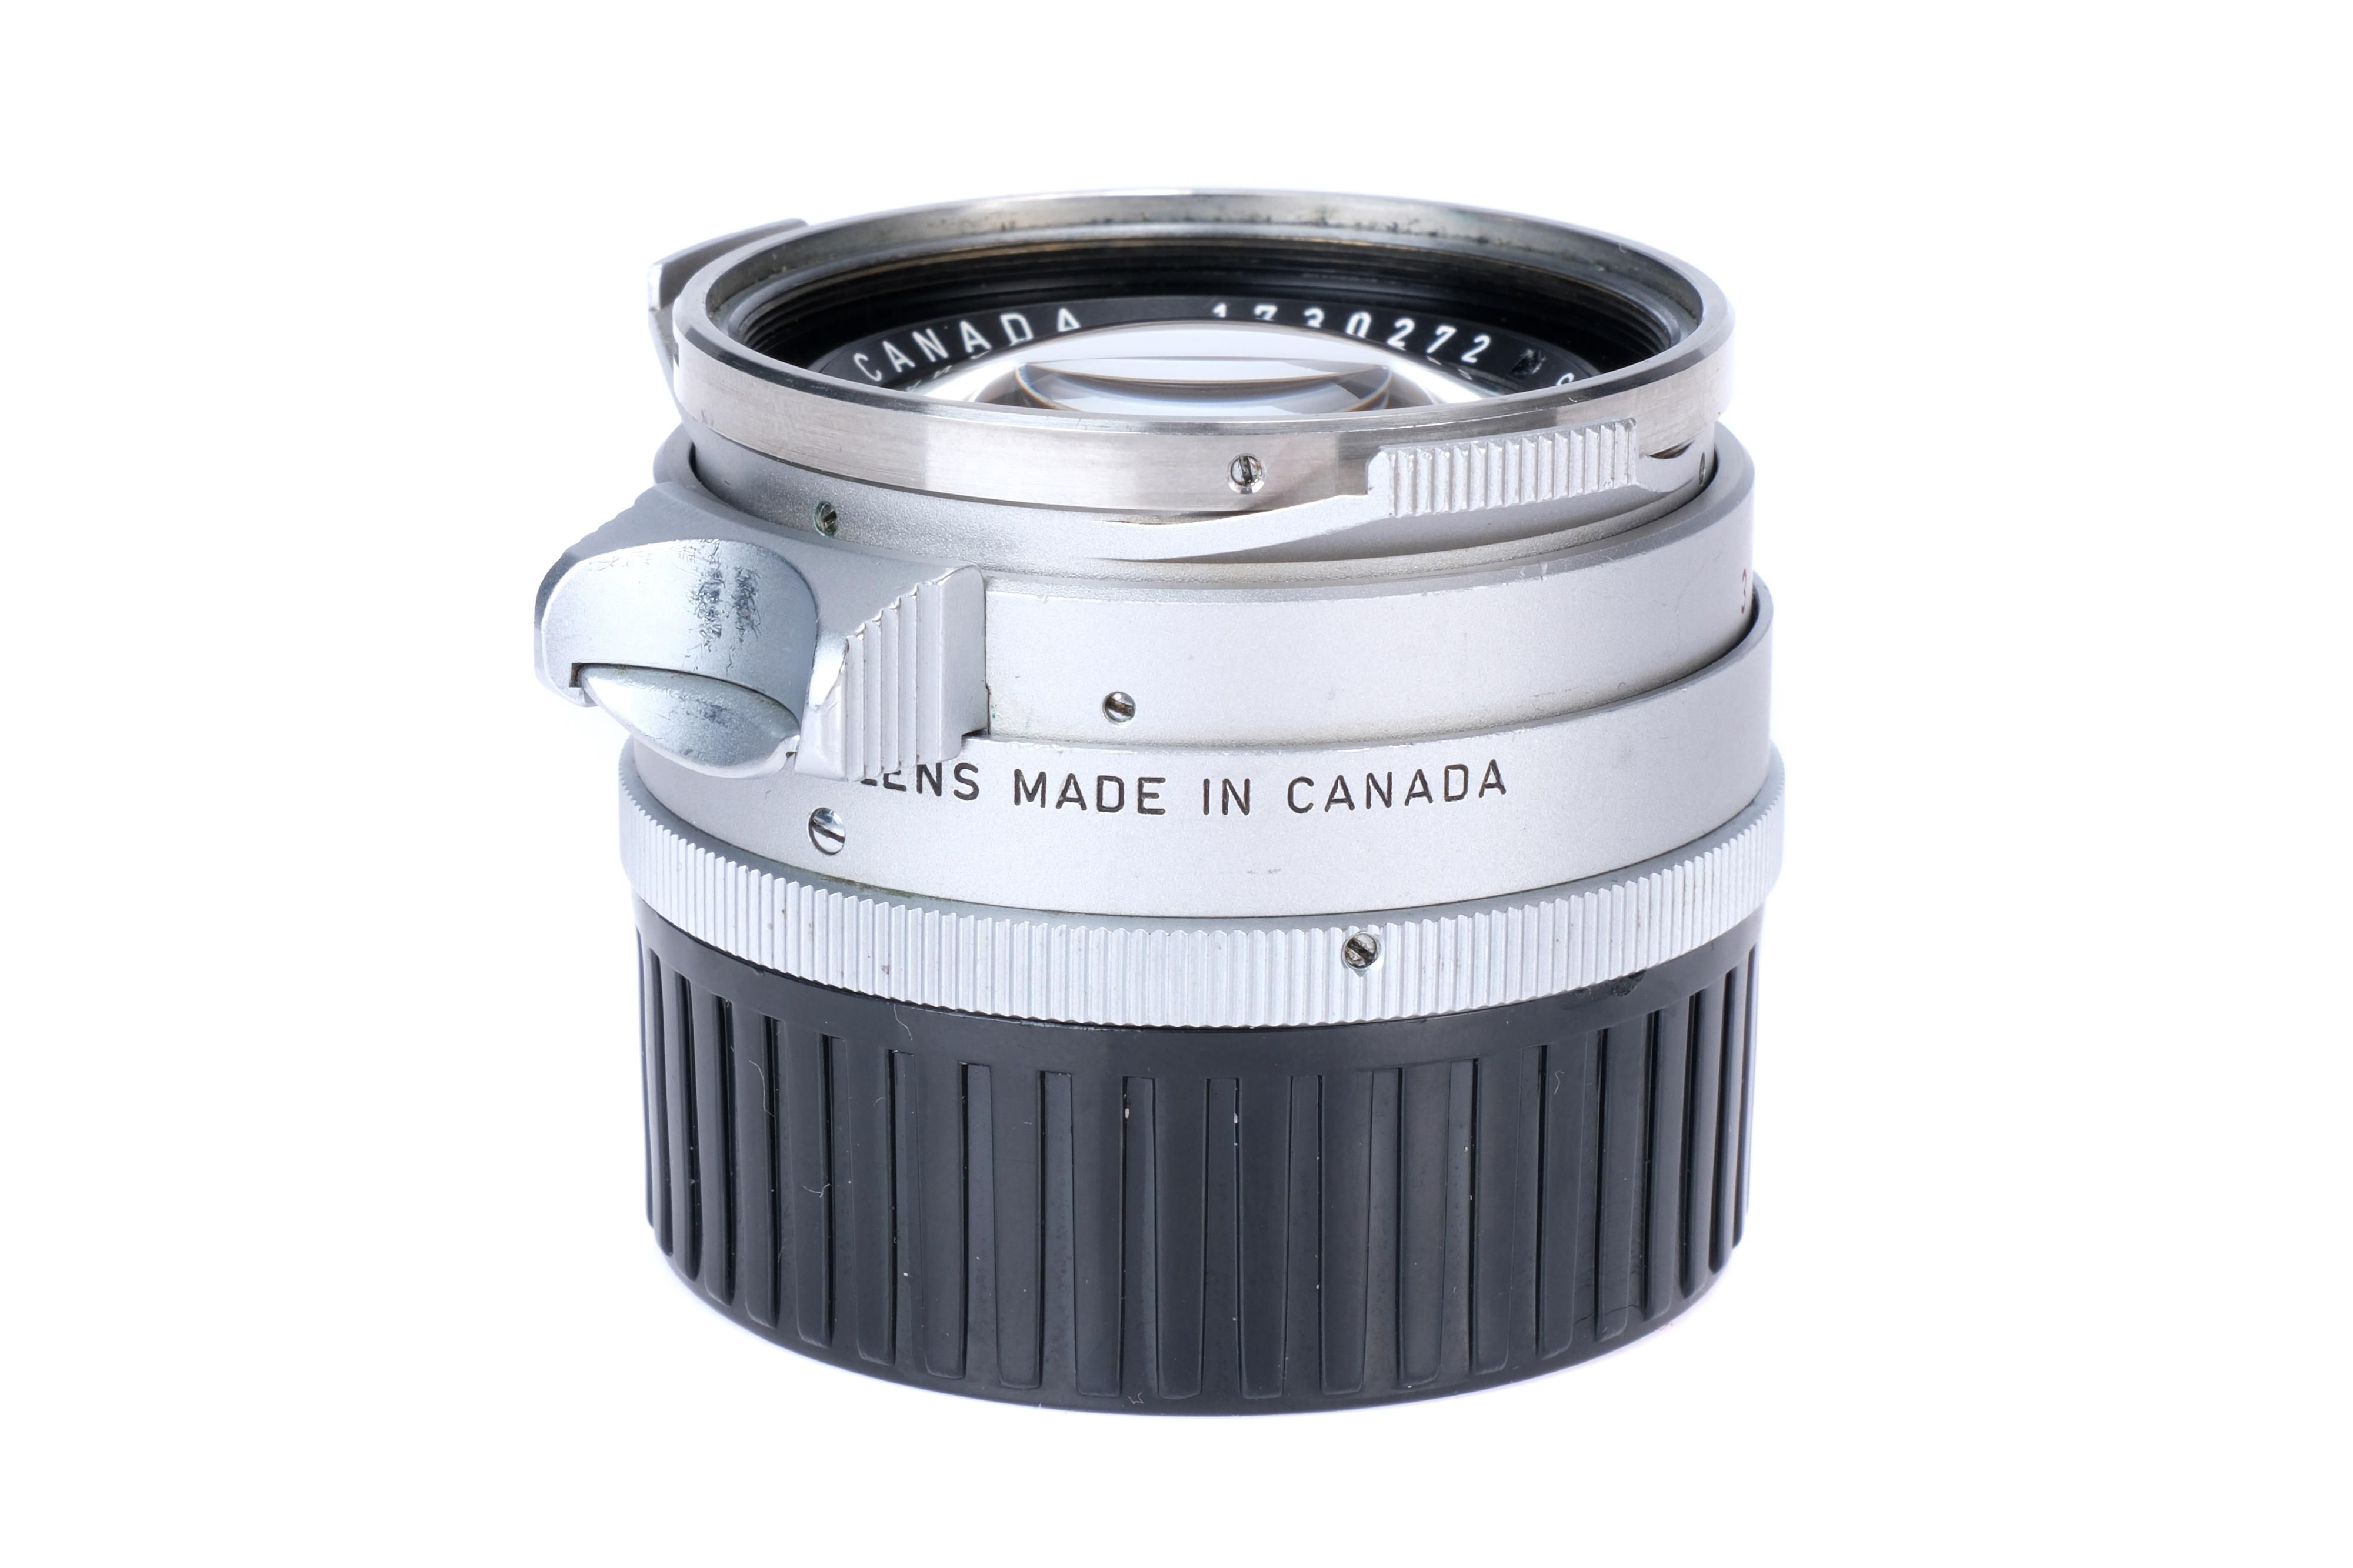 A Leitz Summilux 'Steel Rim' f/1.4 35mm Lens, - Image 6 of 6